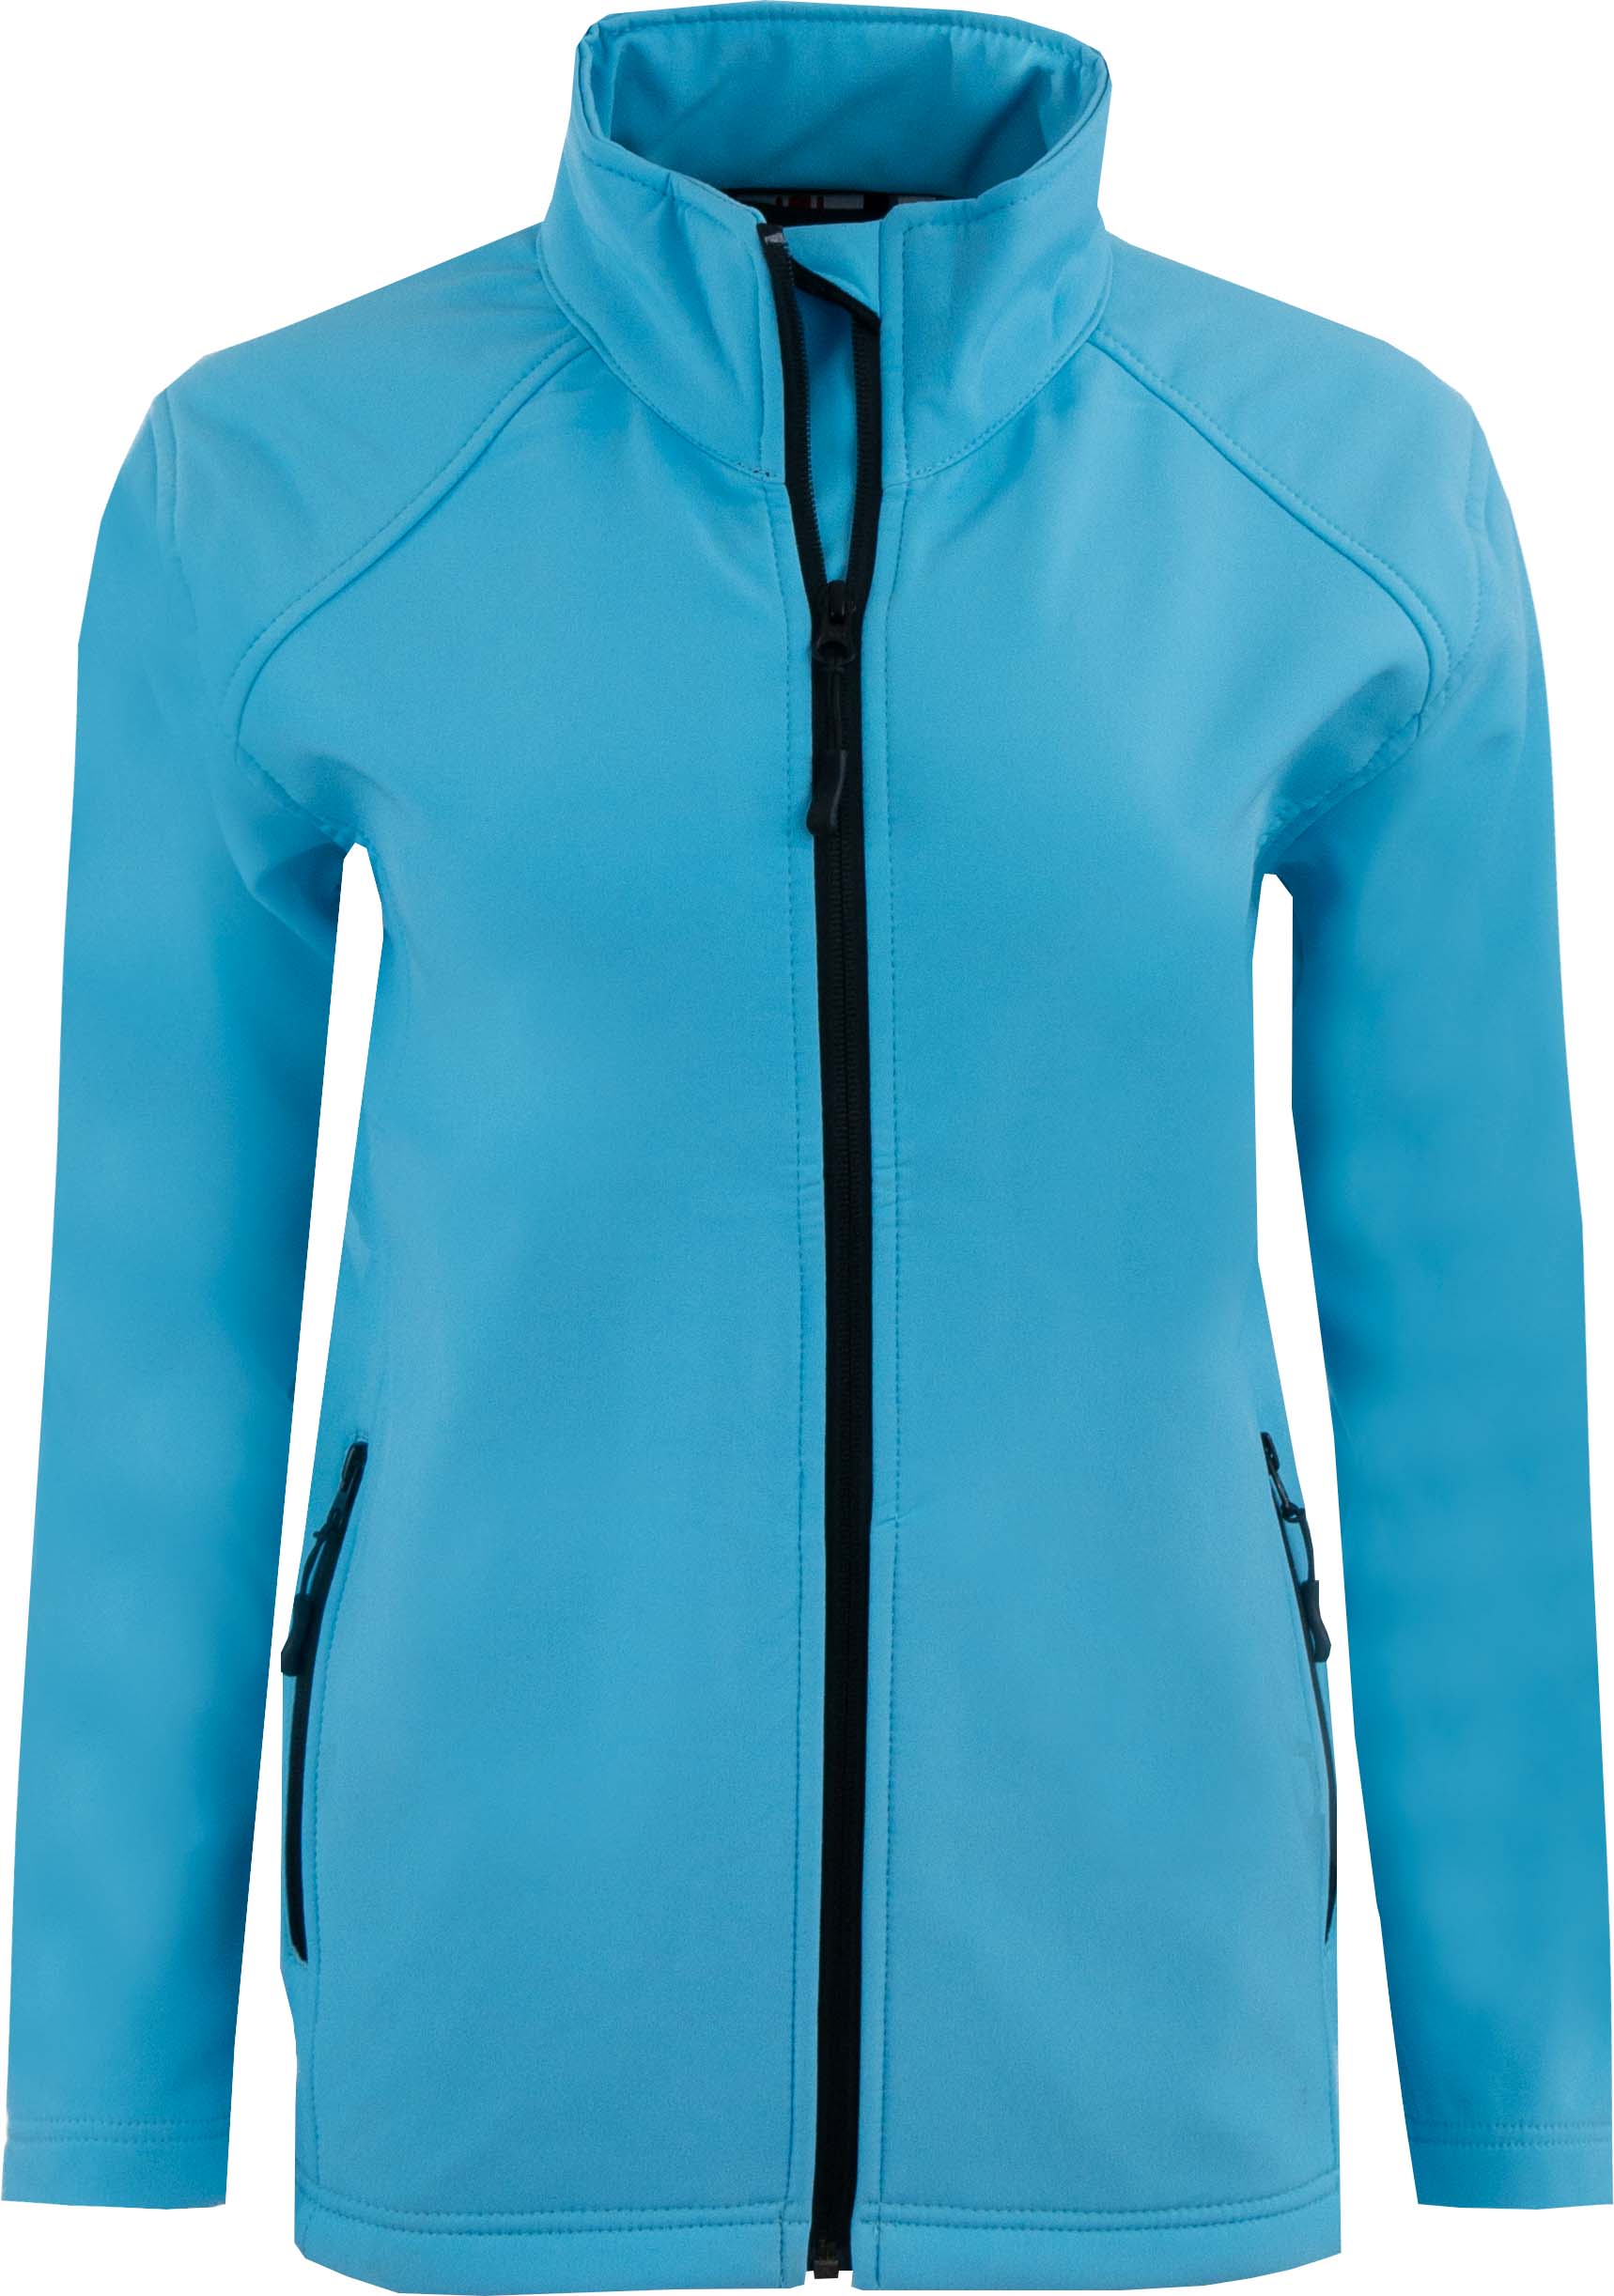 Dámská softshellová bunda Uniwear Turquoise|XS